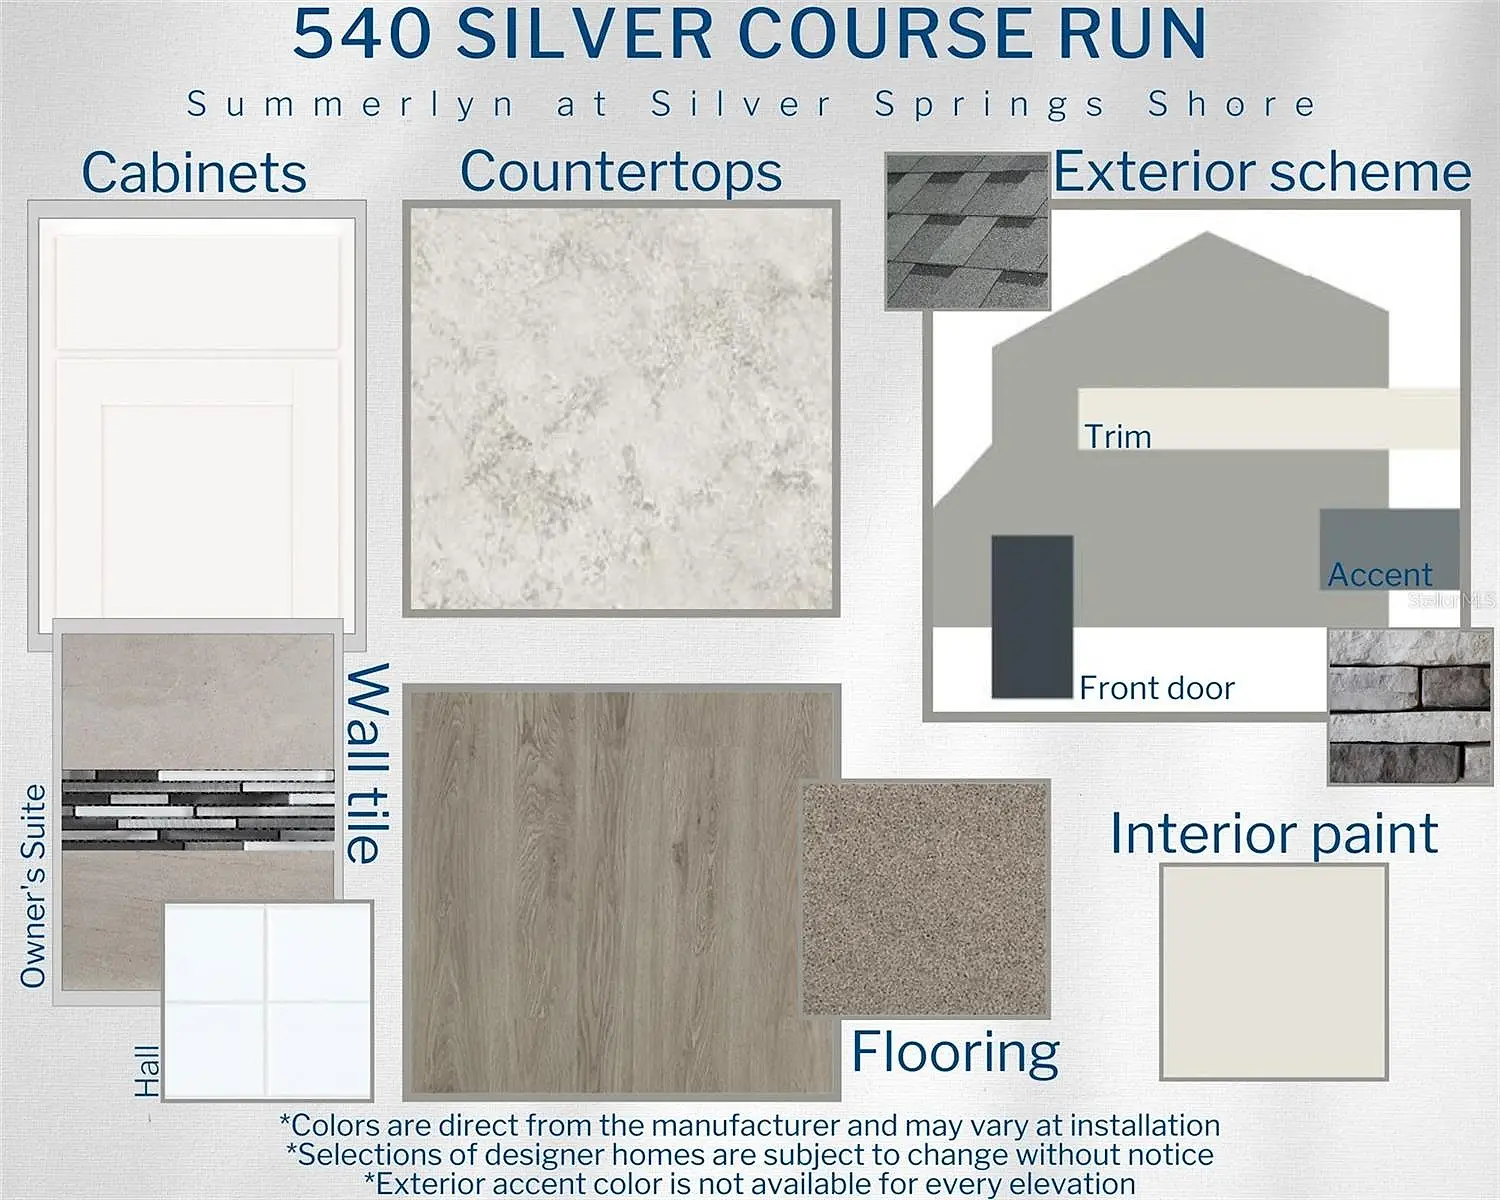 540 Silver Course Run